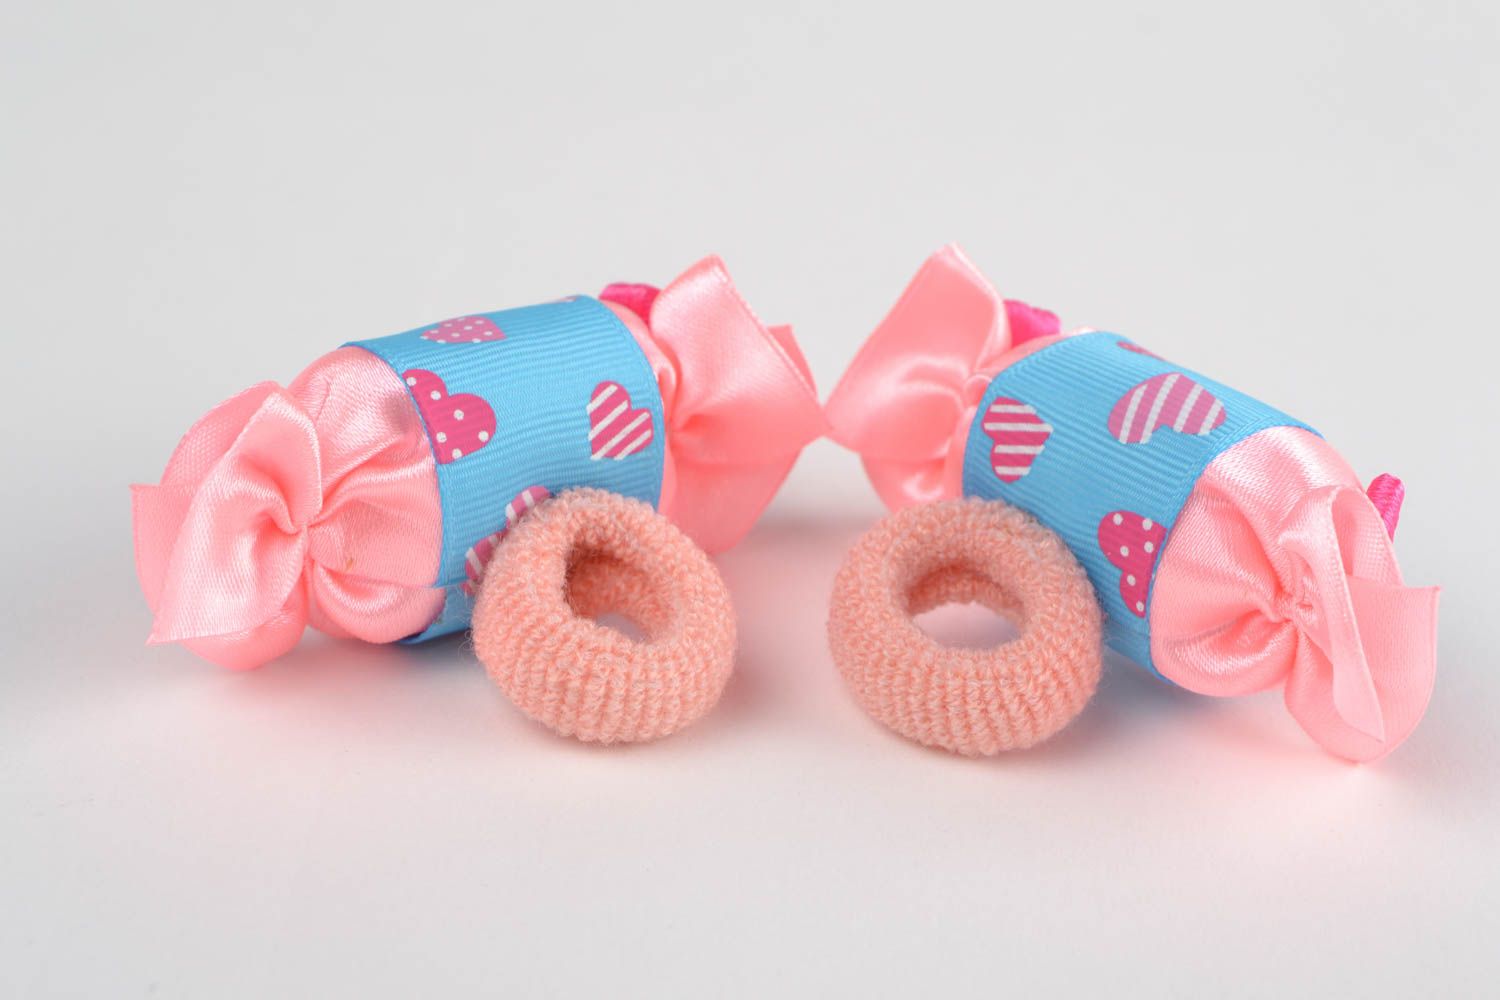 Coleteros de pelo con forma de bombones artesanales dos accesorios azul y rosado foto 4